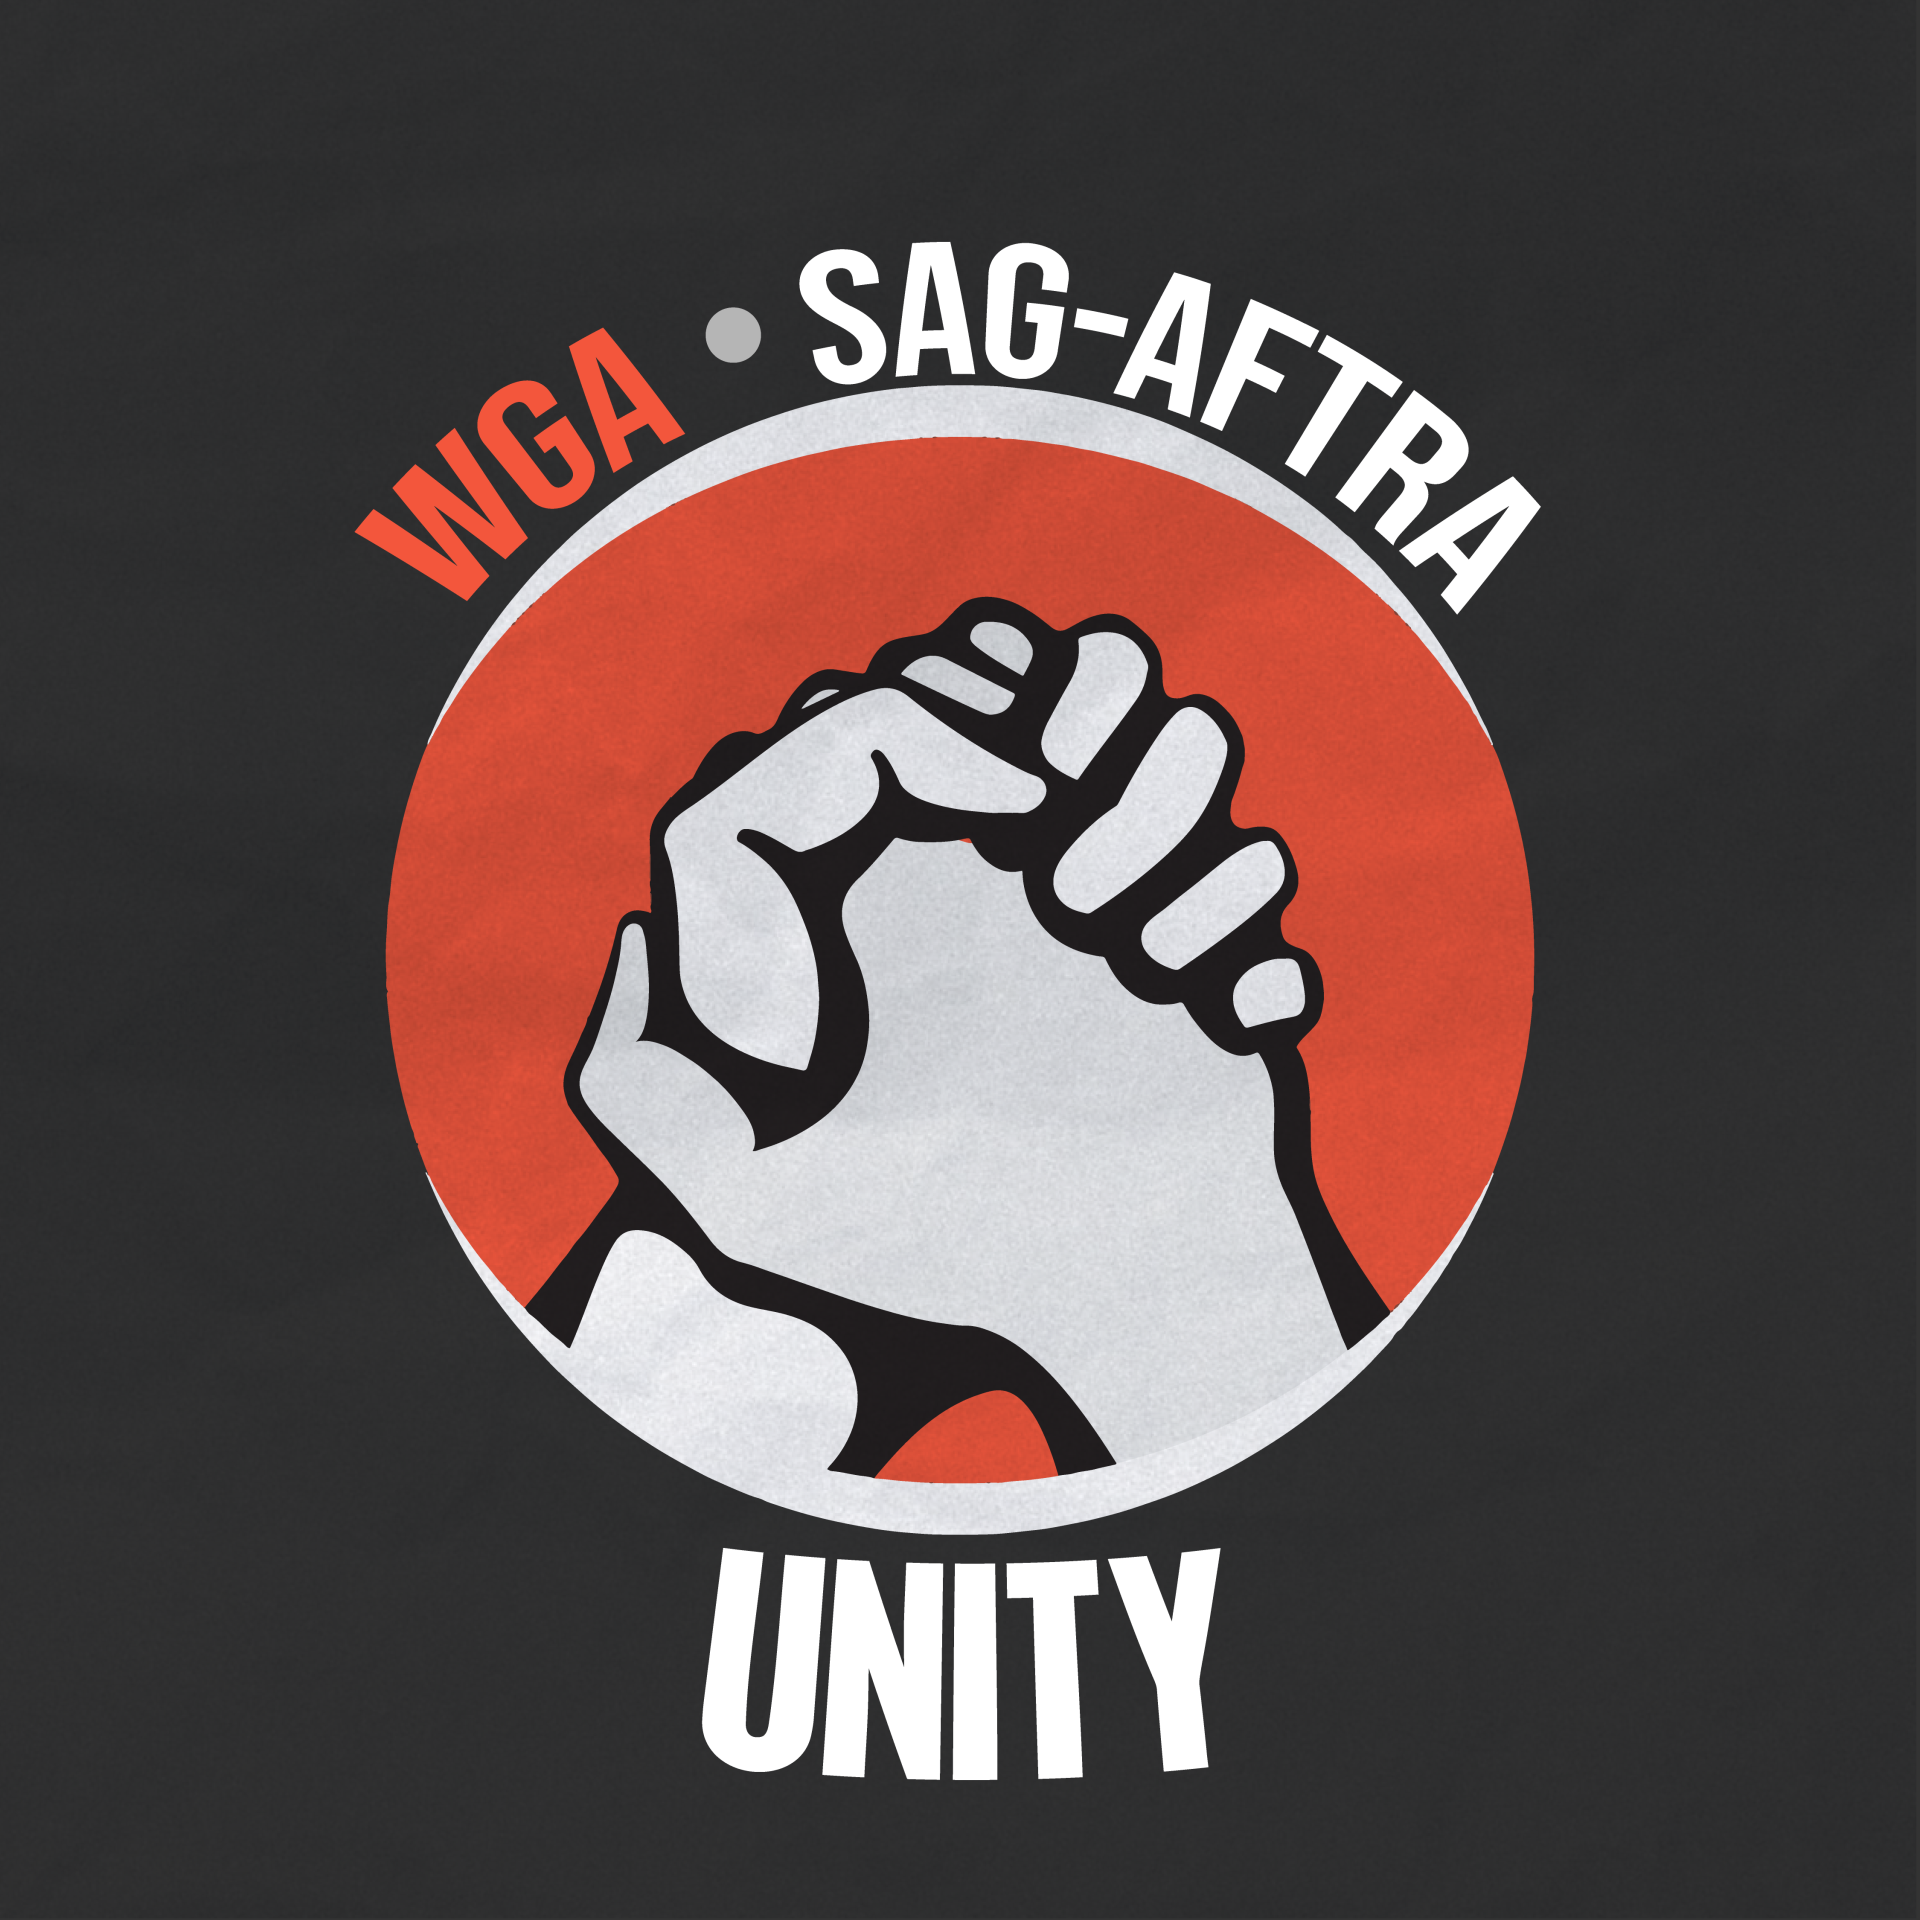 WGA SAG-AFTRA Unity